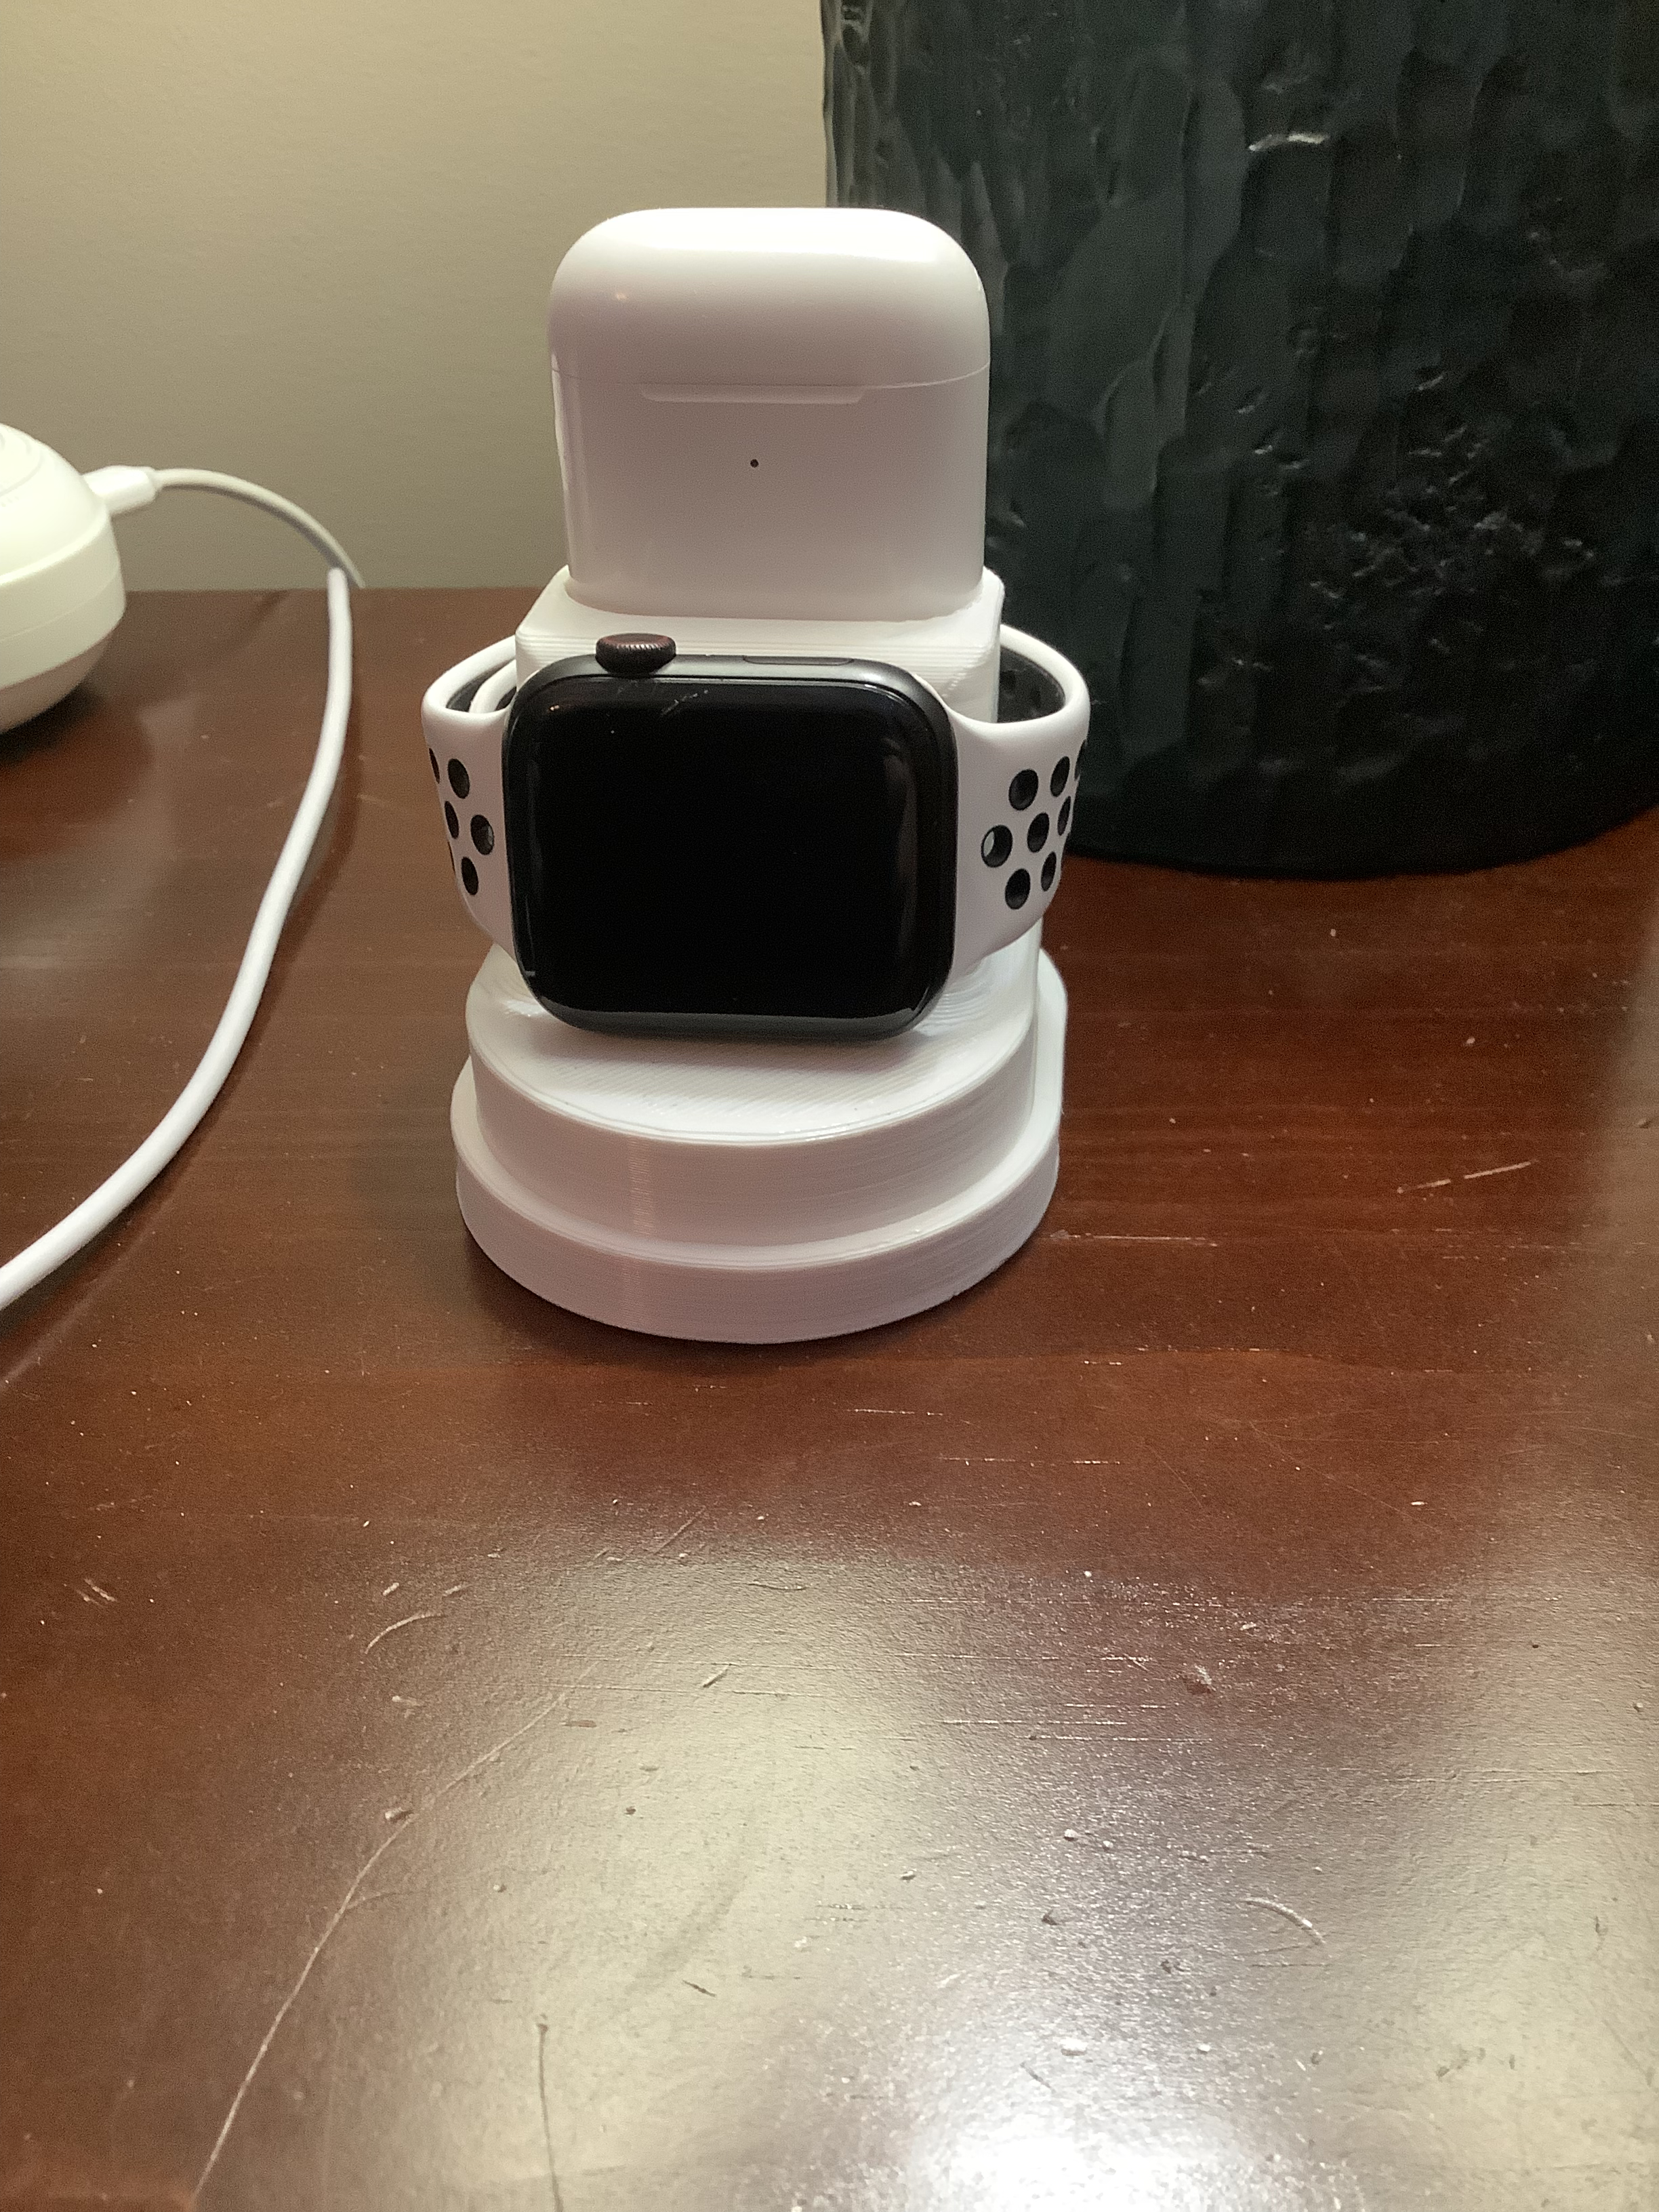 Base de carga para Apple Watch y Airpods